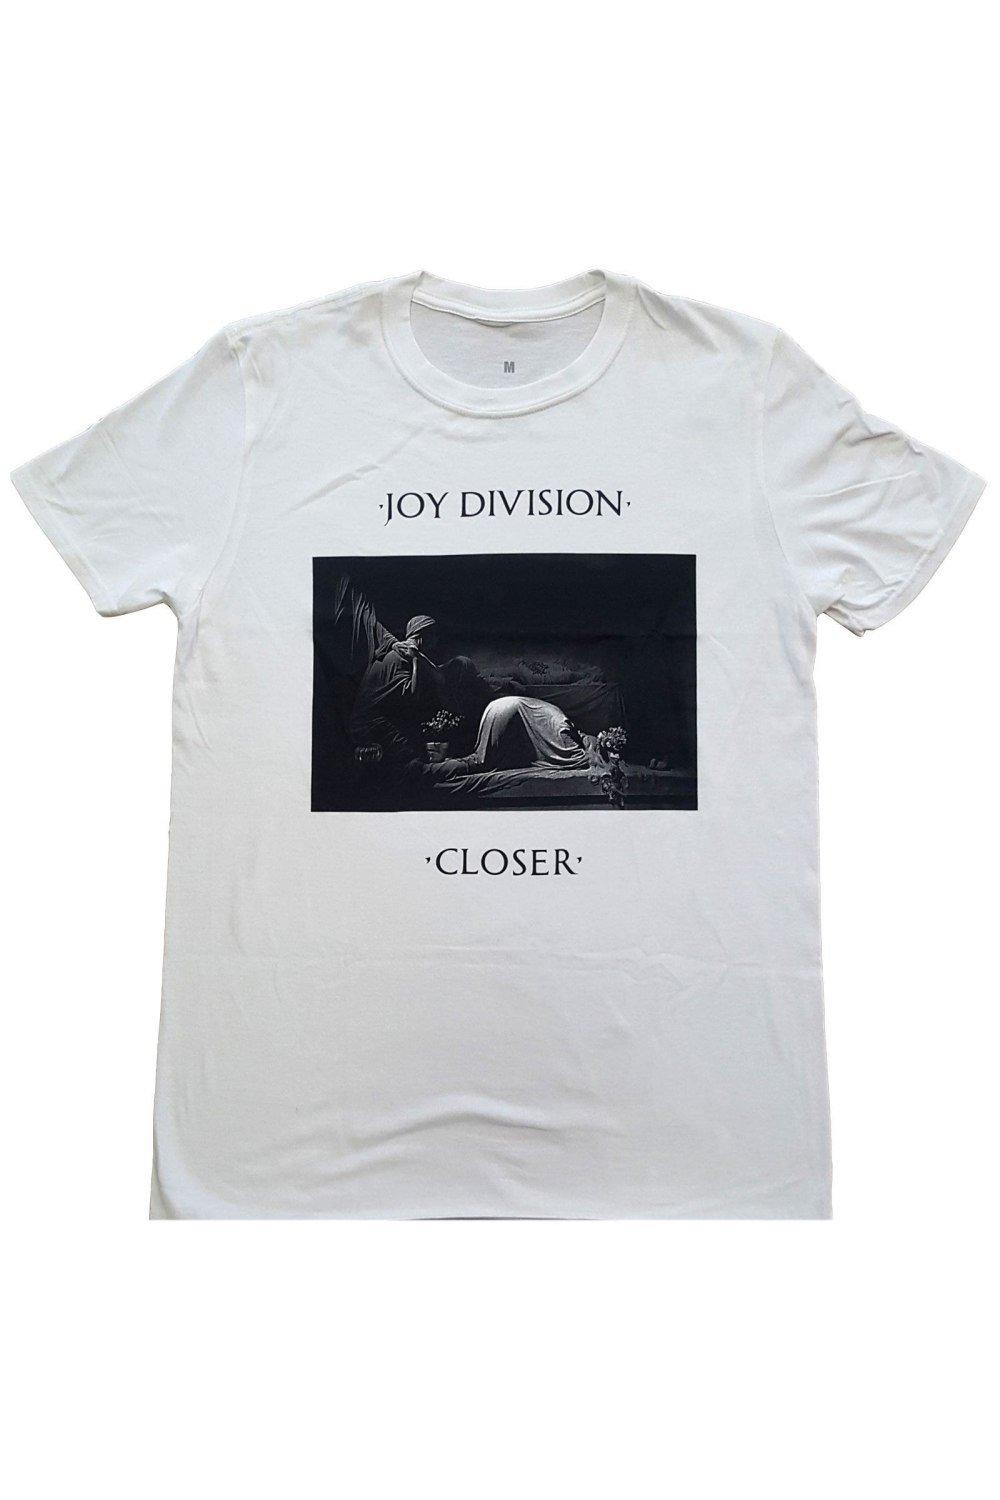 Классическая футболка Closer Joy Division, белый винил 12 lp joy division closer